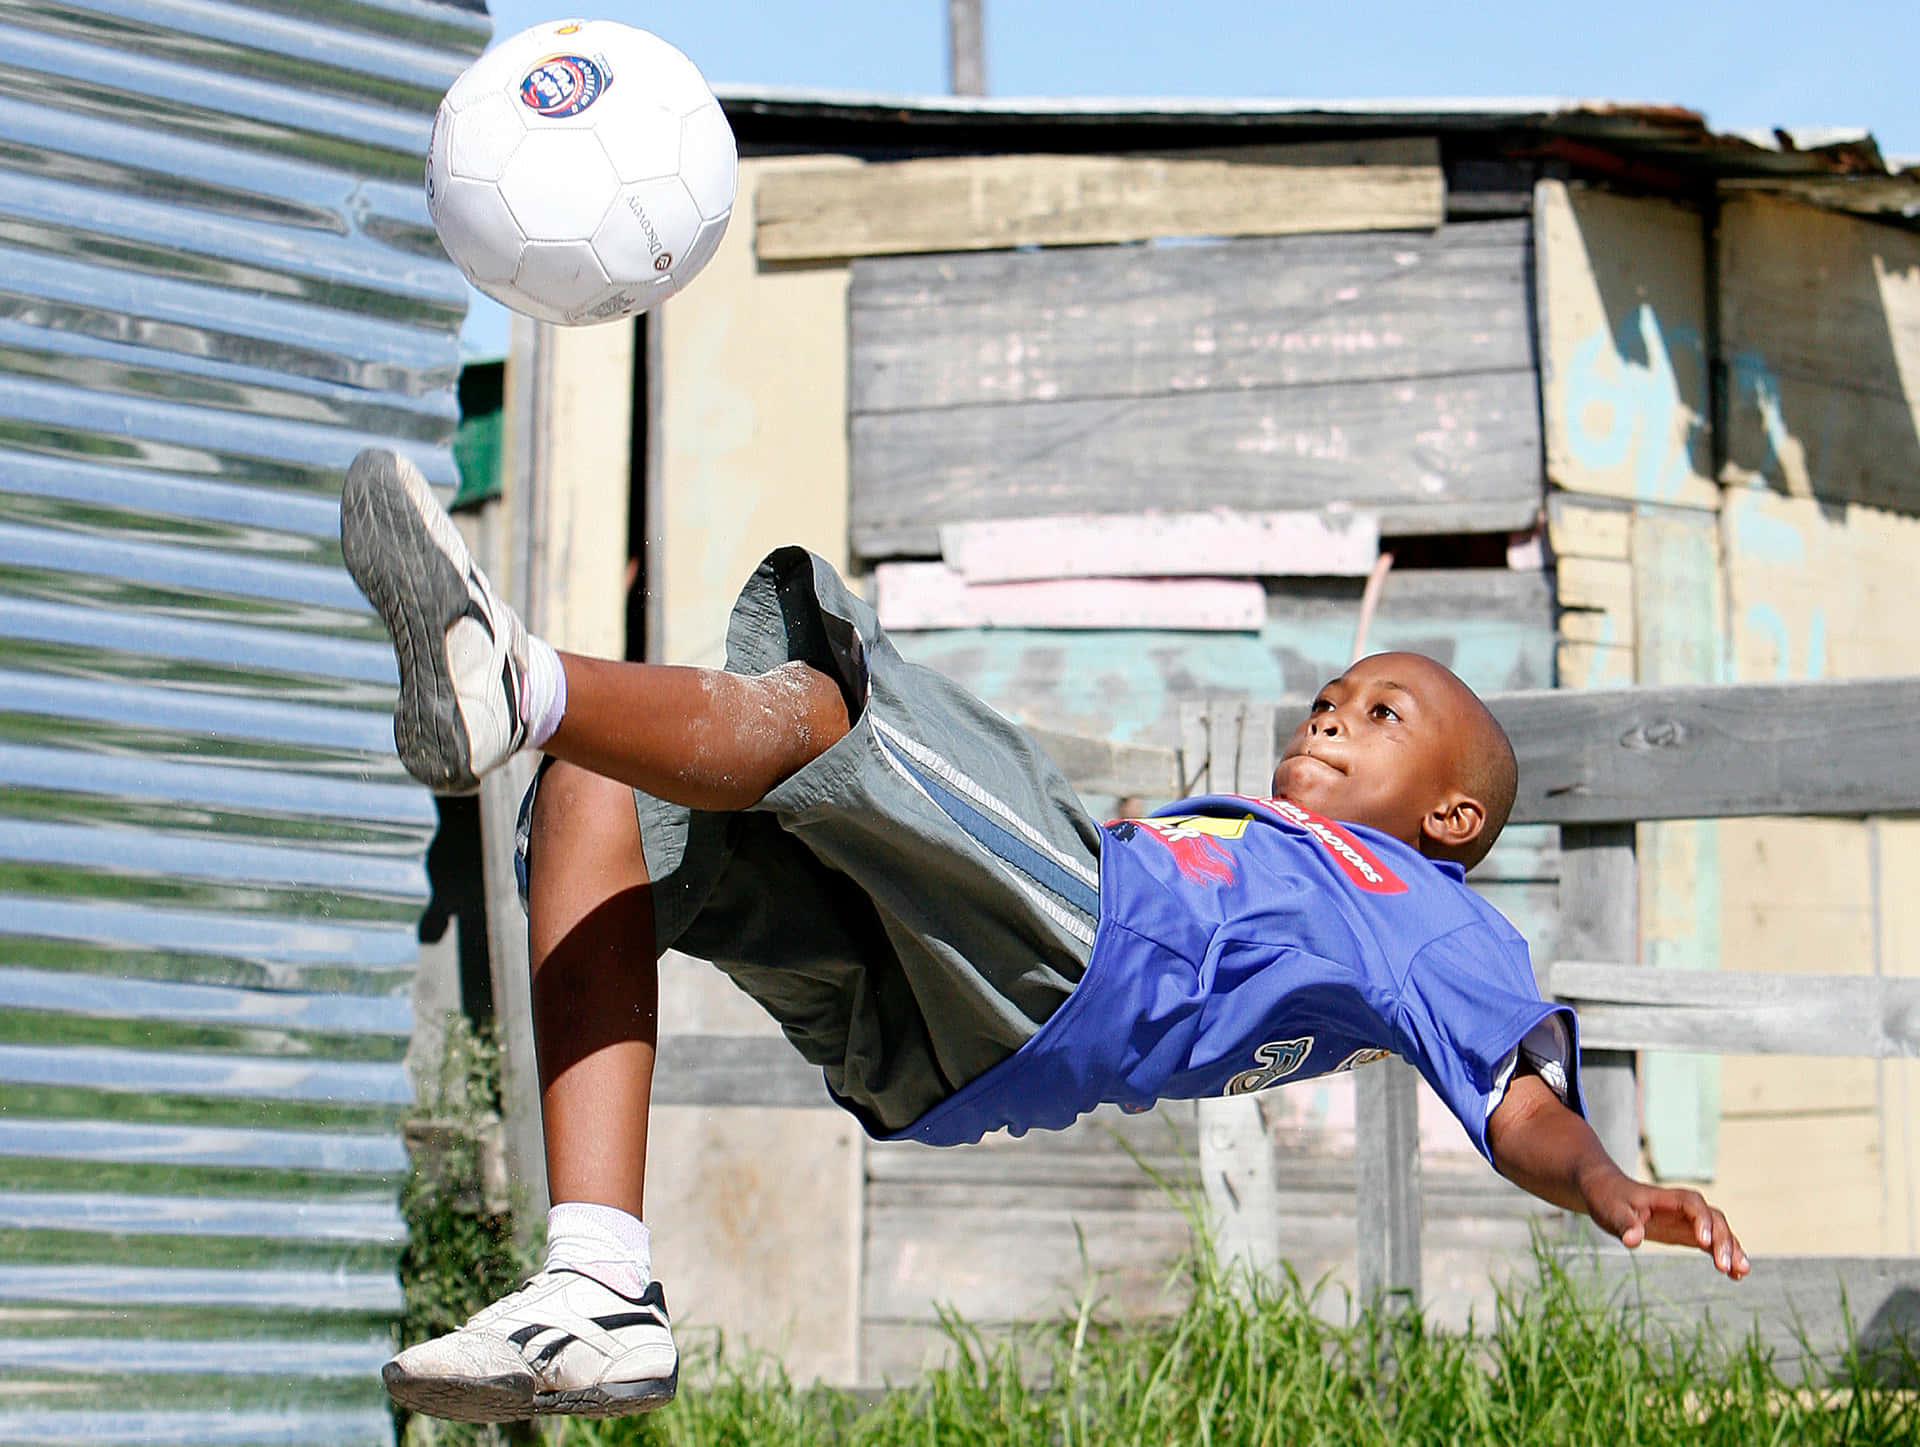 Street Soccer Skillsin Action.jpg Wallpaper